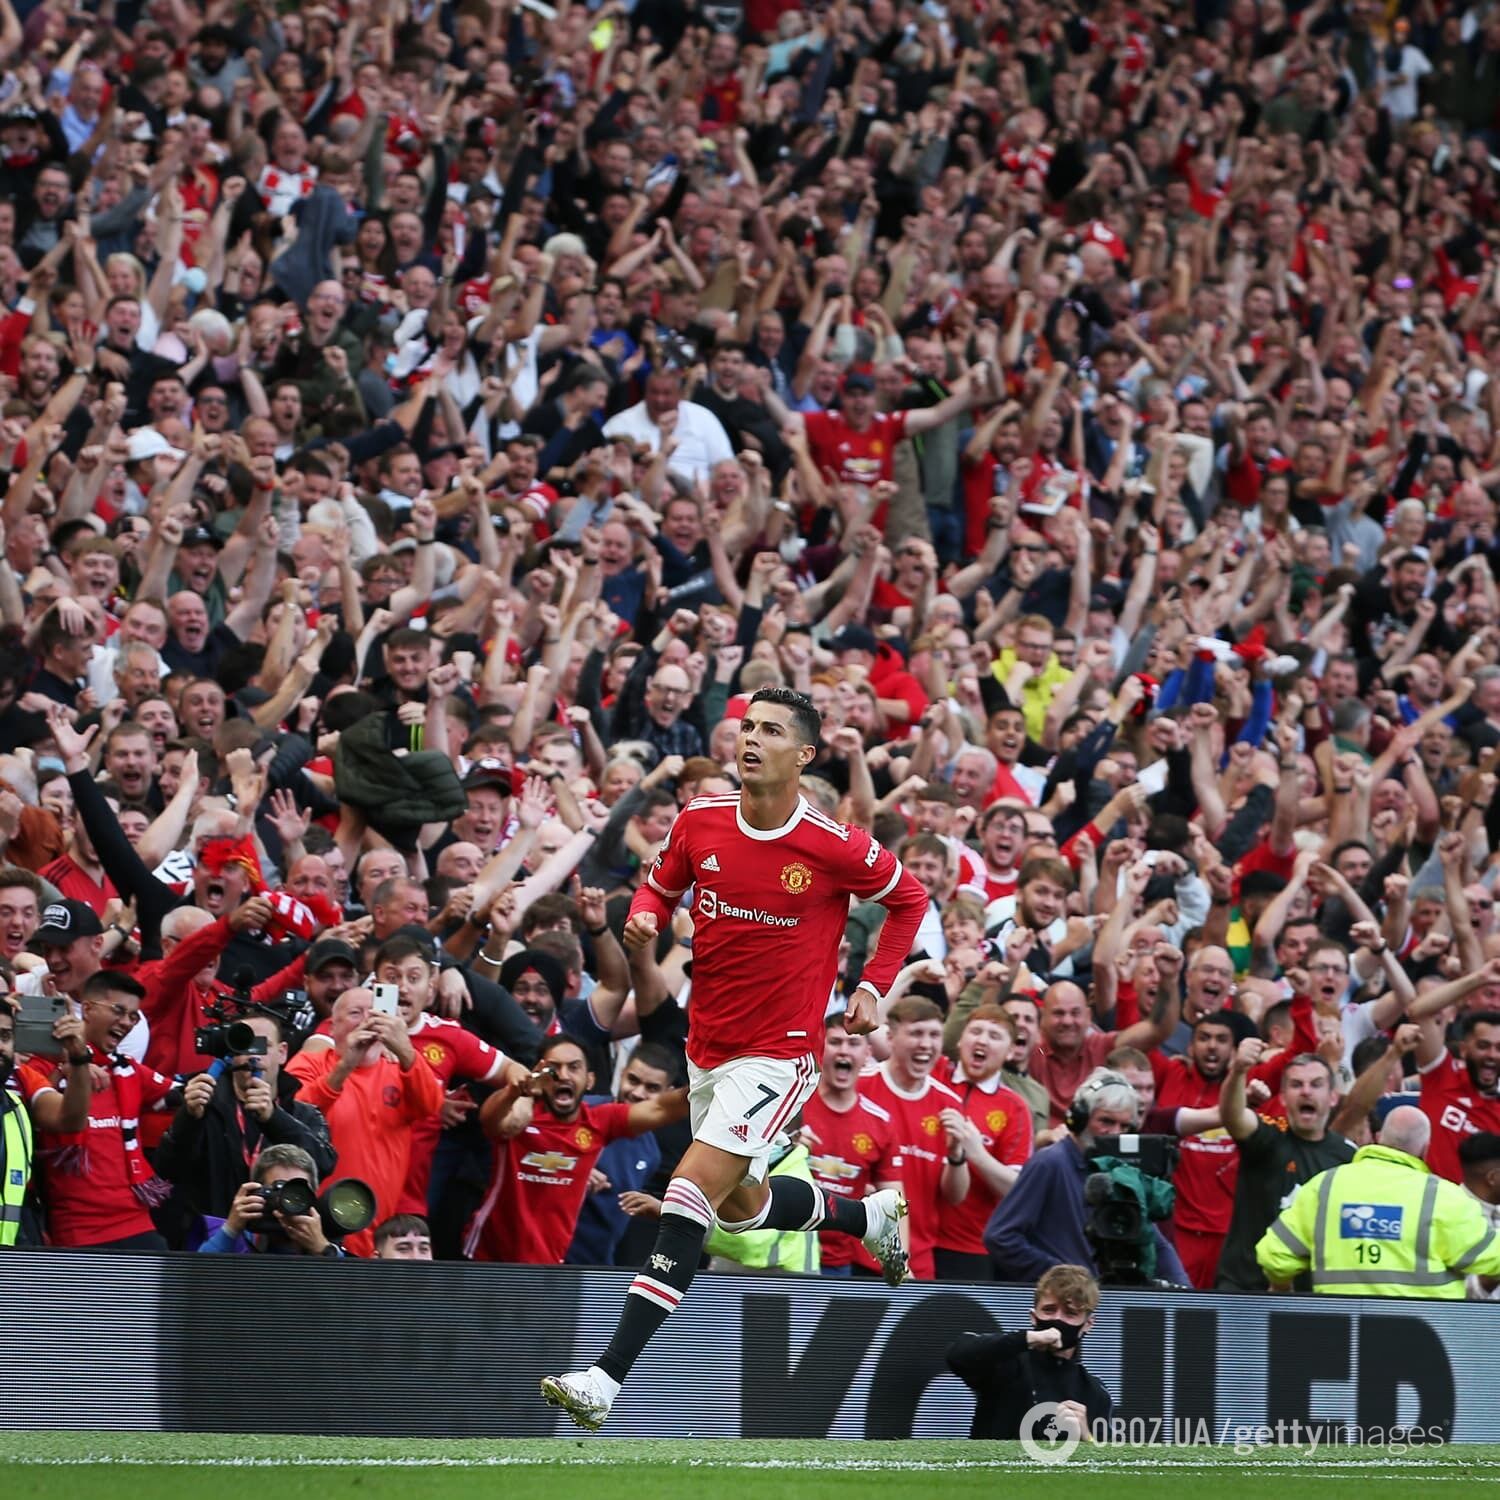 Вернувшись в "Манчестер Юнайтед", Криштиану Роналду забил два гола и принес победу над "Ньюкасл Юнайтед" со счетом 4:1 11 сентября